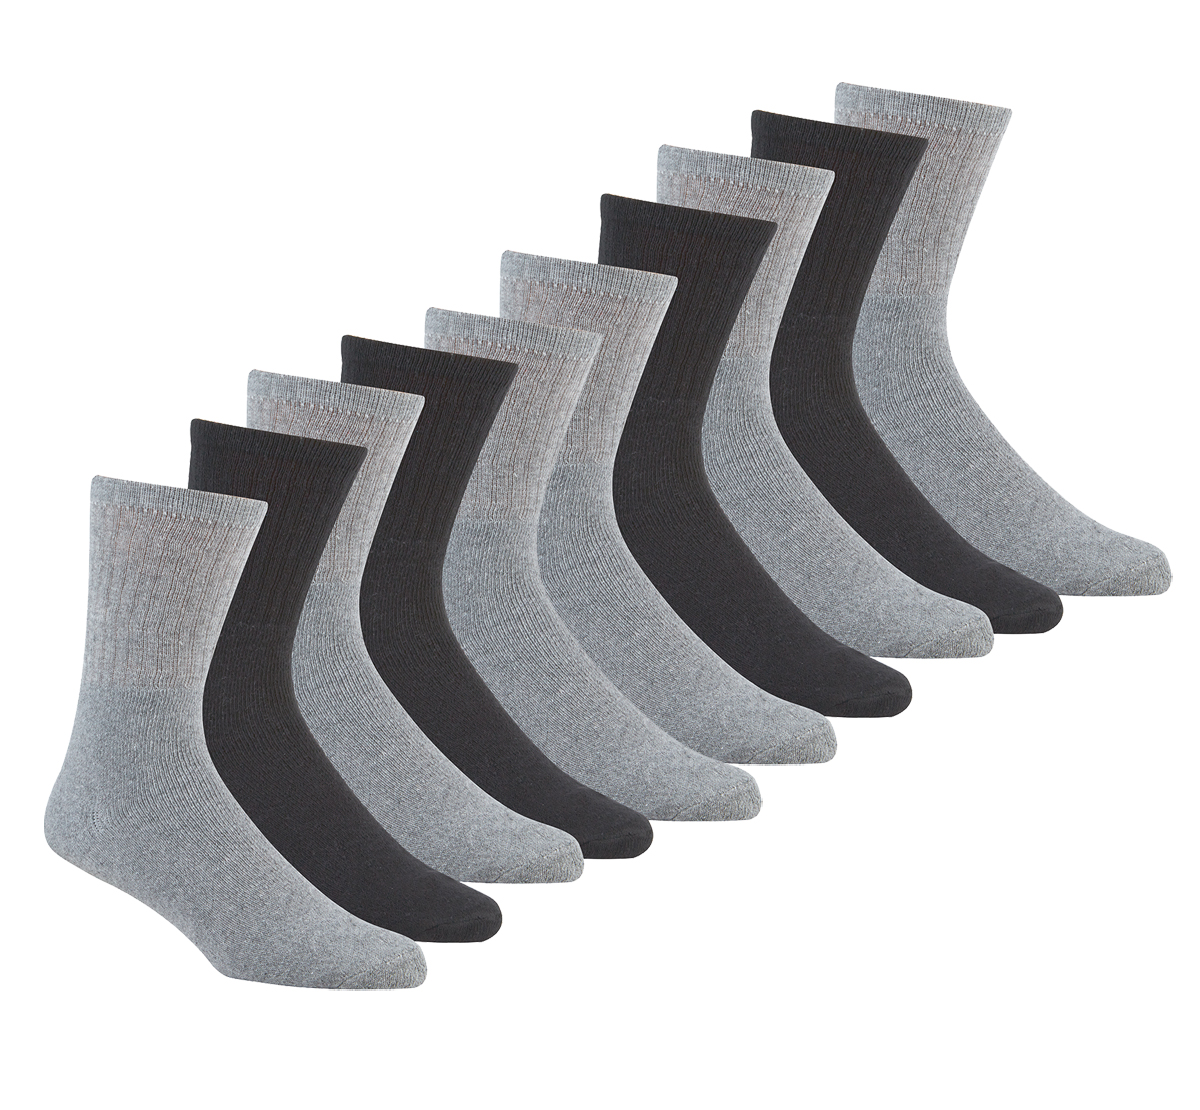 High Quality 6 Pair Unisex Cotton Rich Sport Socks Shoe Size 6-11